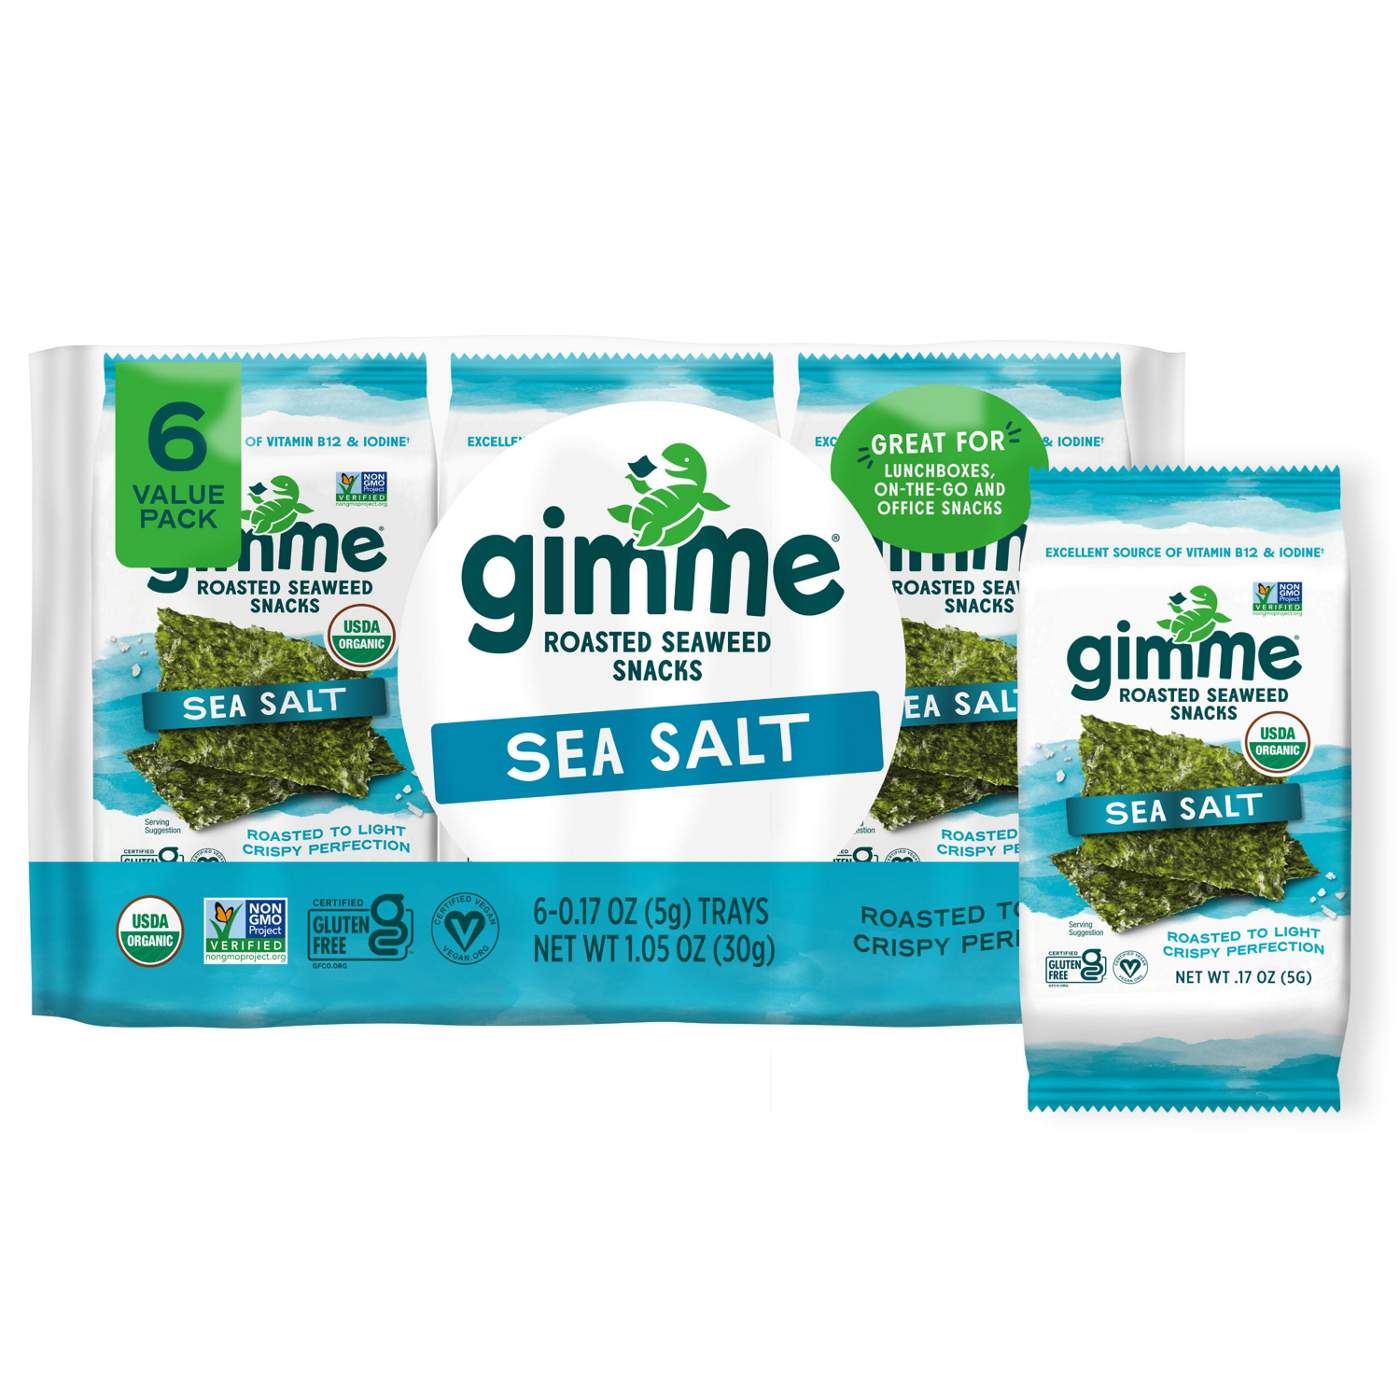 gimme Roasted Seaweed Snacks - Sea Salt; image 7 of 9